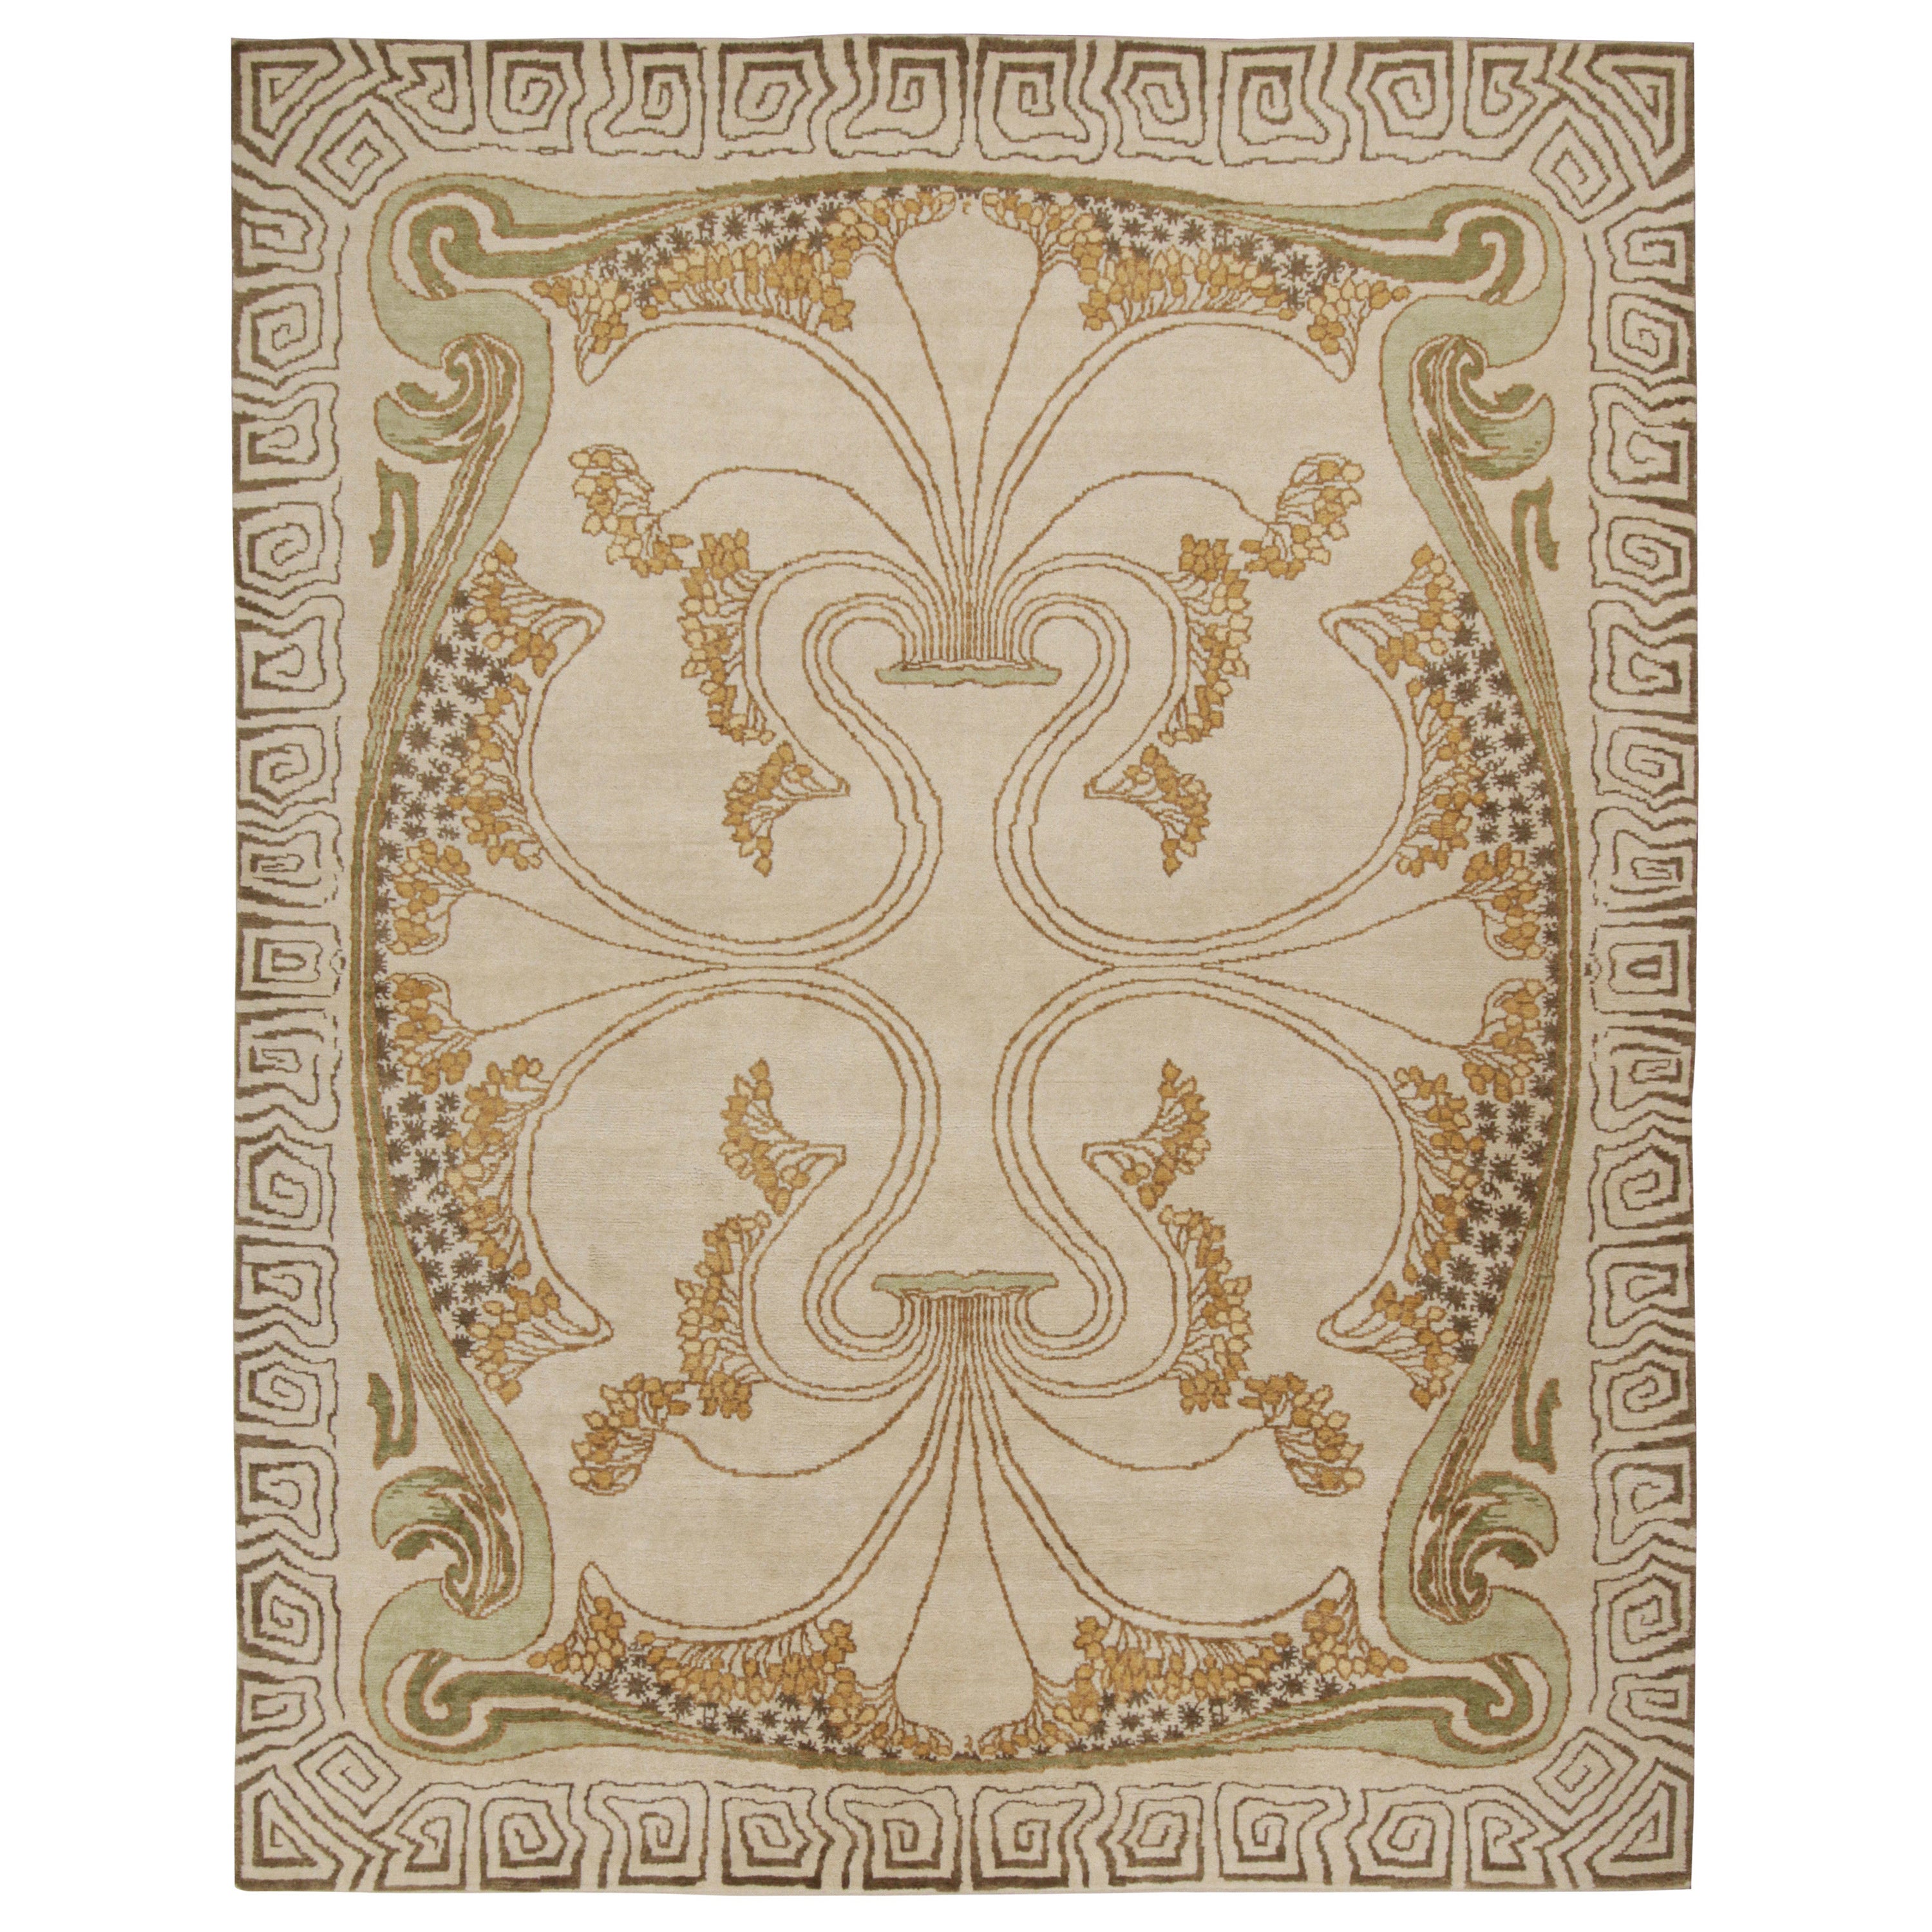 Rug & Kilim's French Style Art Deco rug in Cream & Gold Geometric Patterns (tapis Art déco de style français à motifs géométriques crème et or)